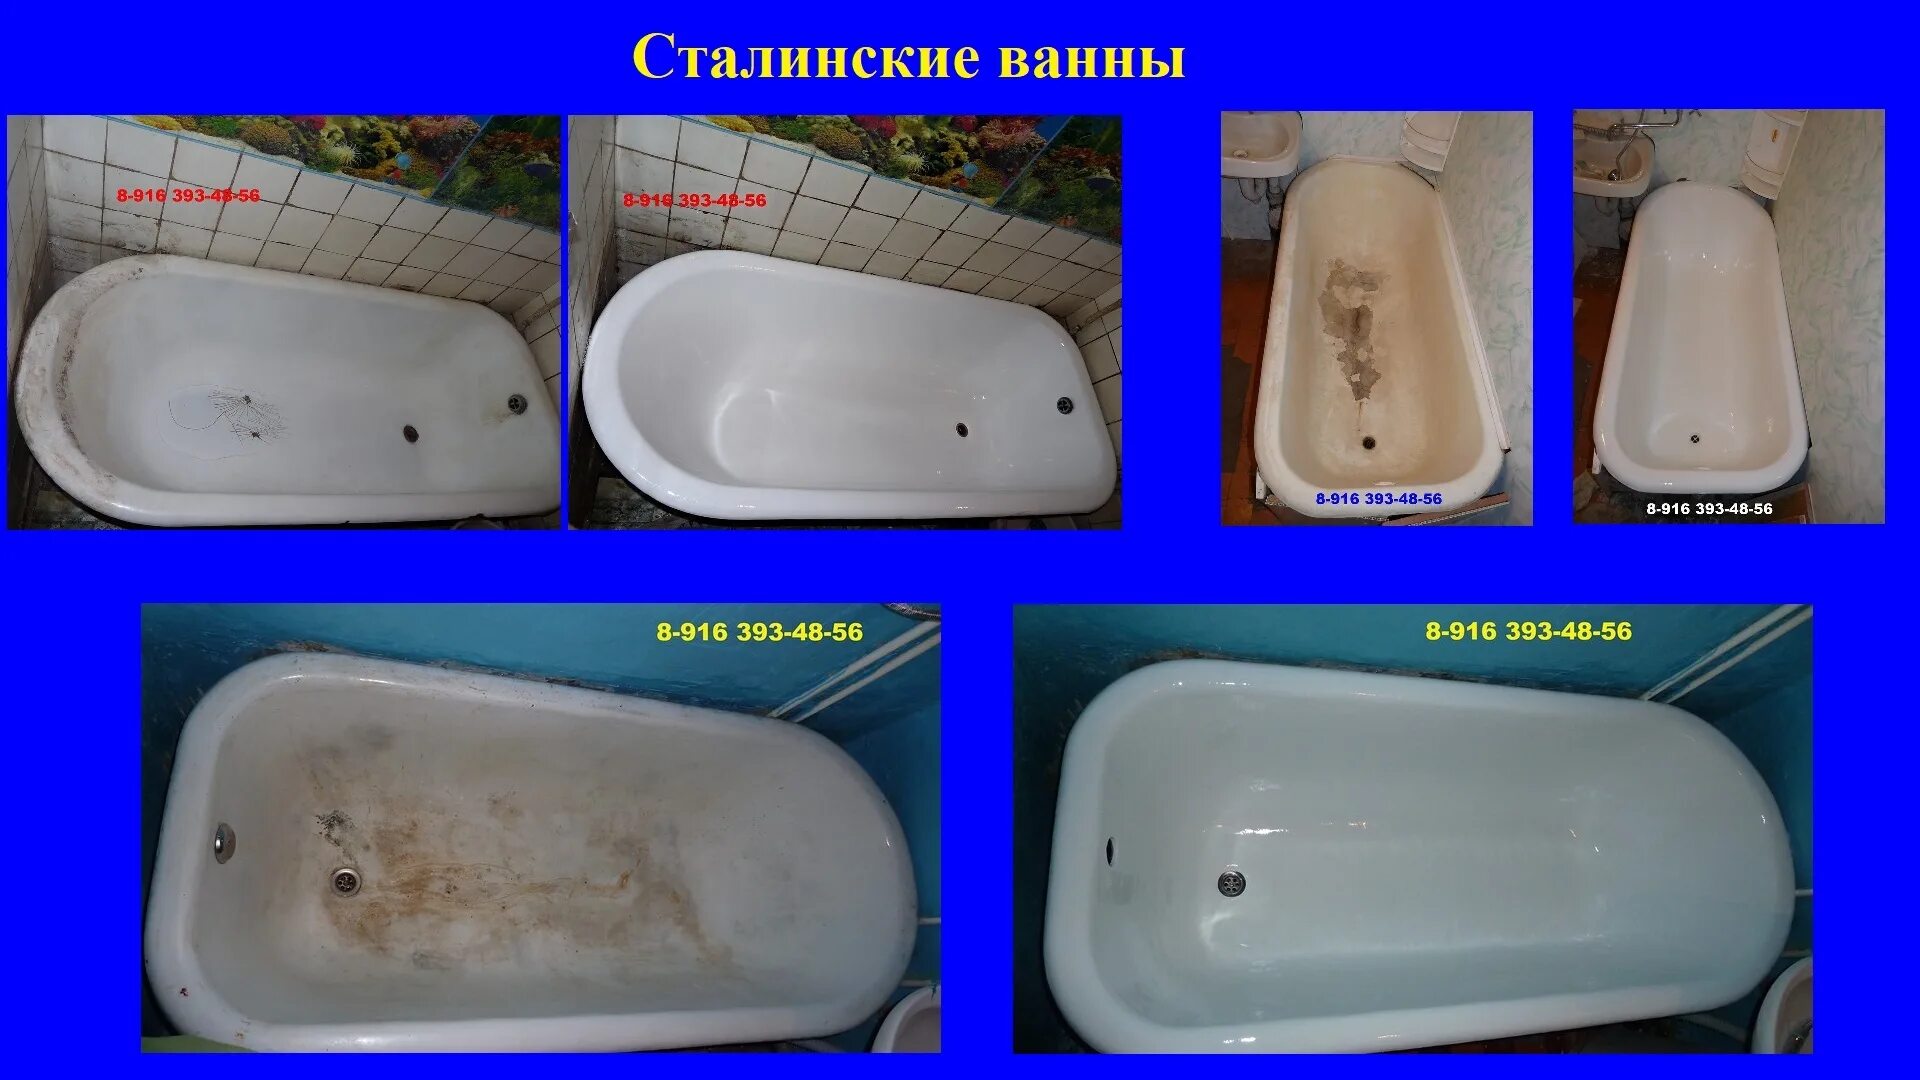 Реставрация ванны цена москва. Эмалировка чугунной ванны. Эмалировка ванны в Москве. Сравнение ванн. Реконструкция ванны чугунной.